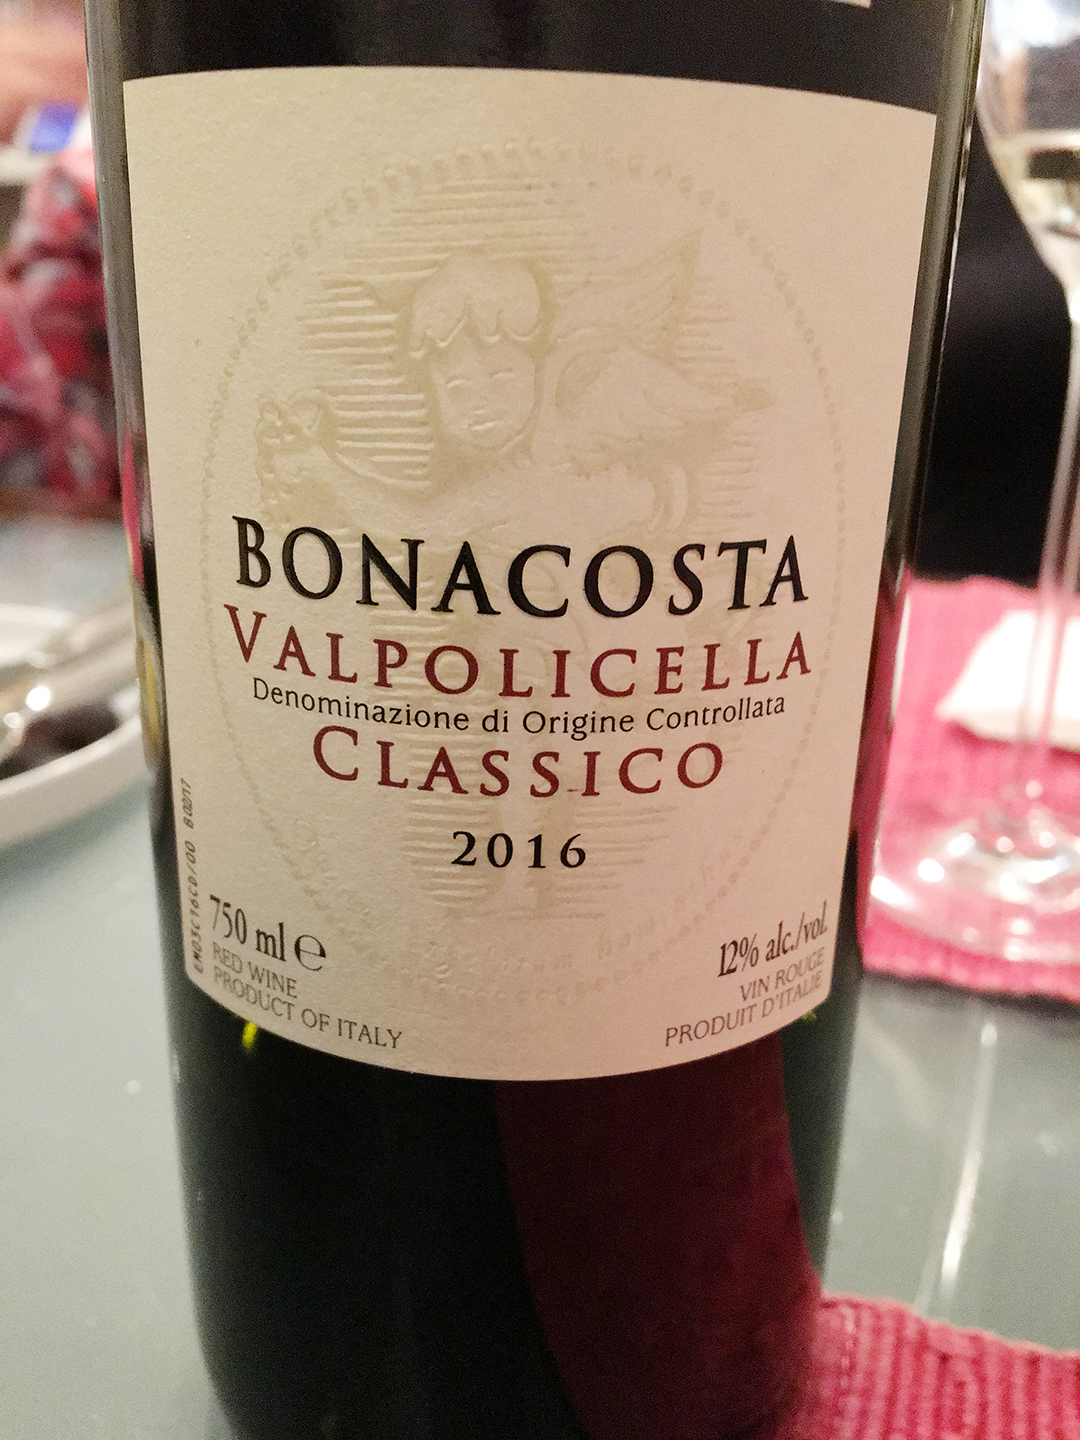 Bonacosta Valpolicella Classico 2016